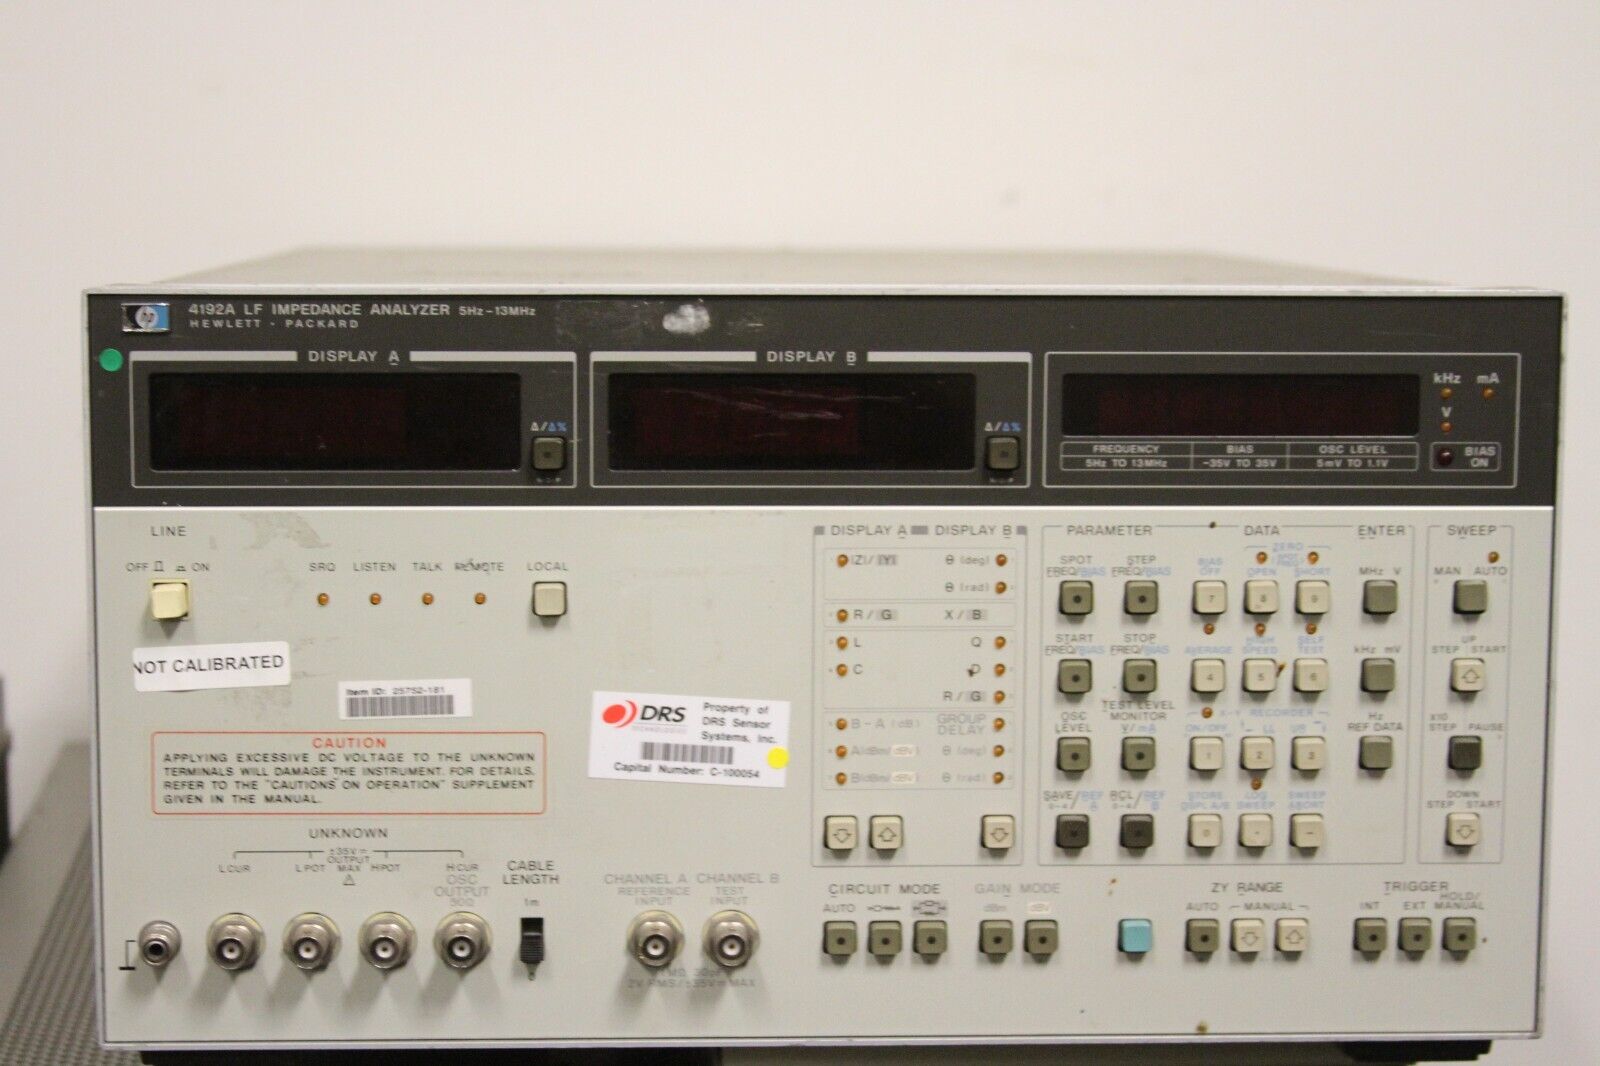 Agilent HP 4192A 5 Hz - 13 MHz LF Impedance Analyzer